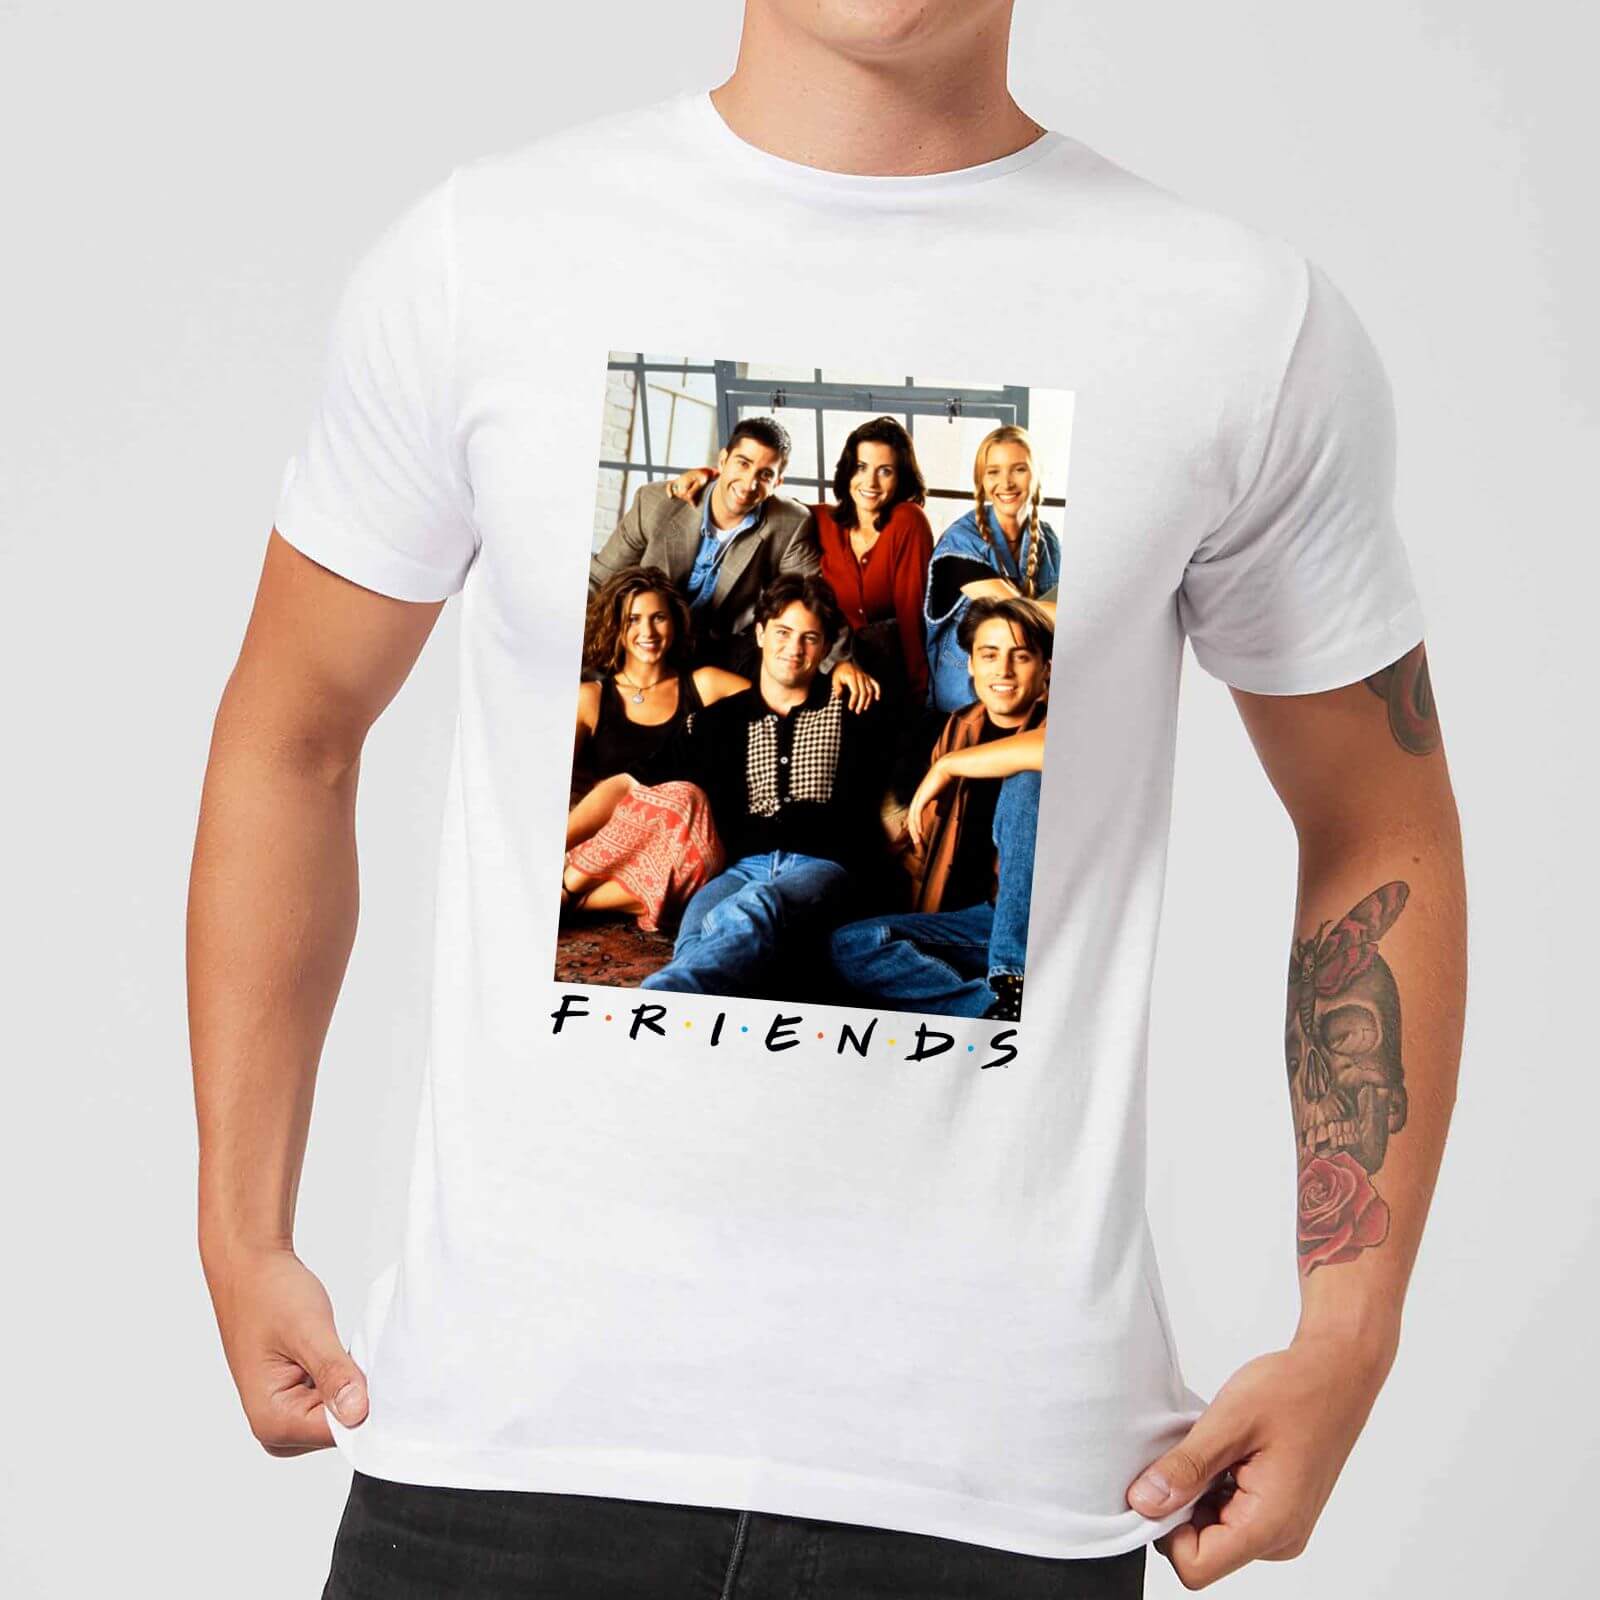 Friends Group Photo Men's T-Shirt - White - XL - White